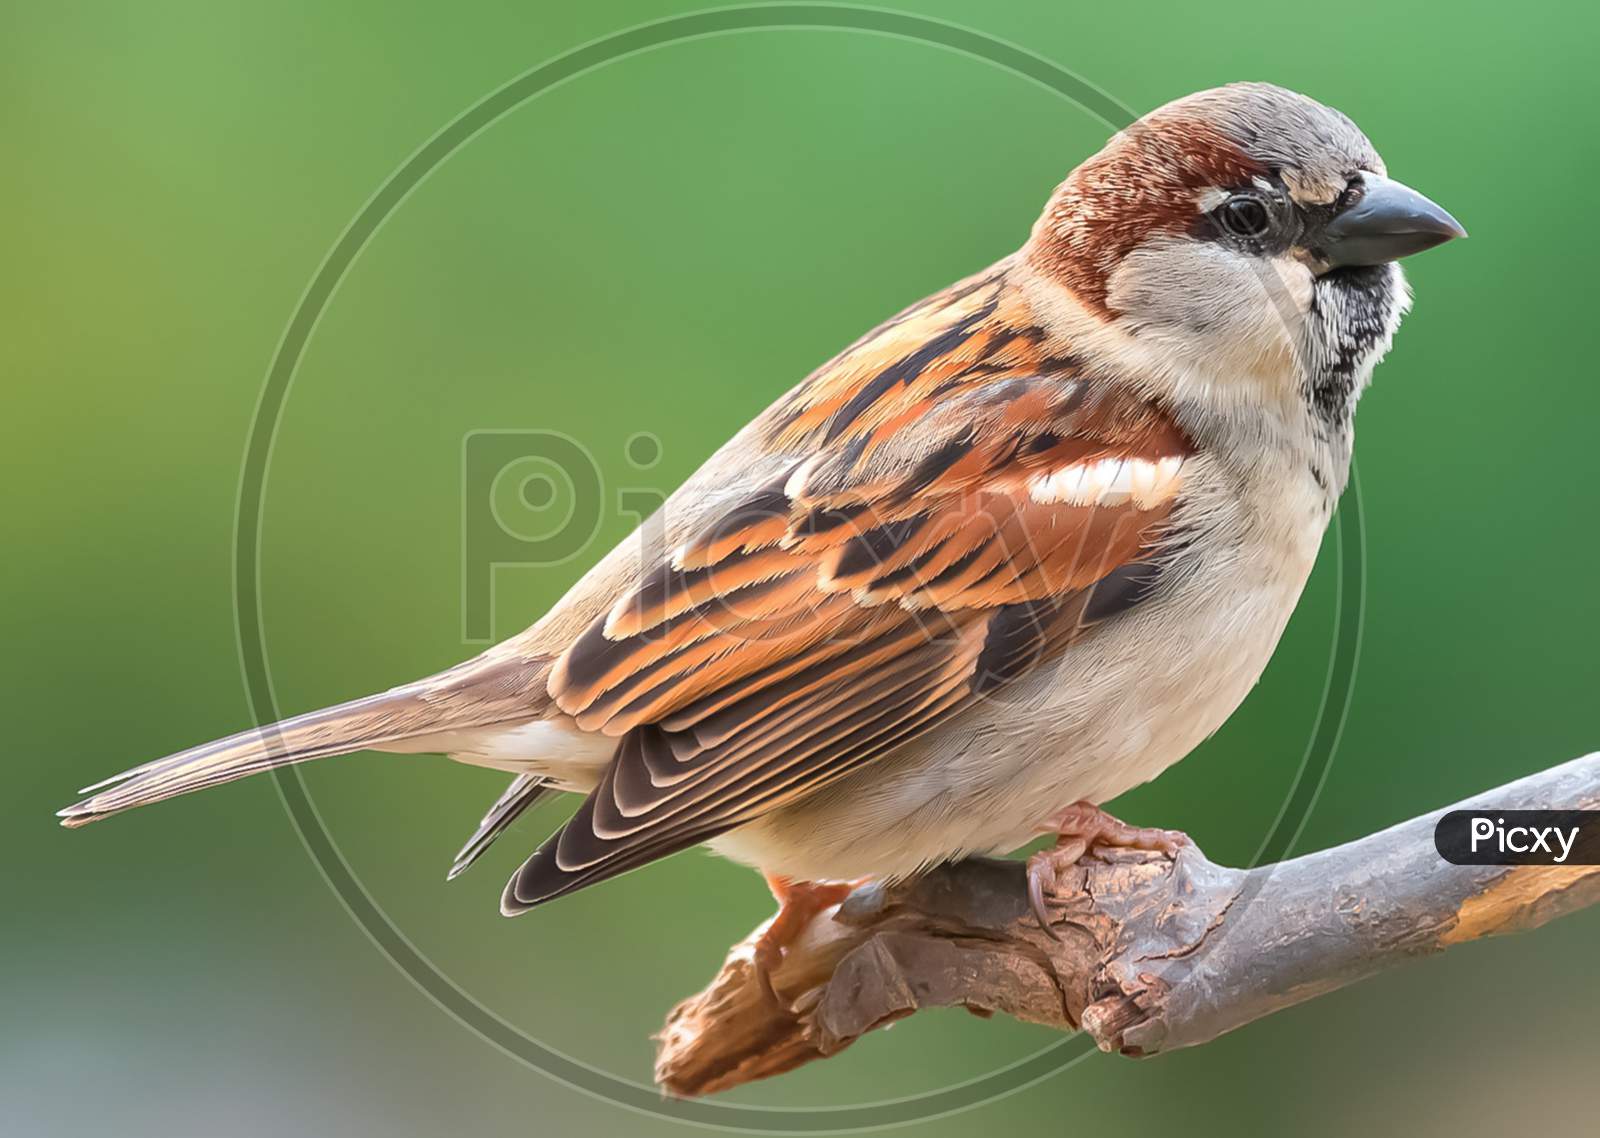 House sparrow jpg image